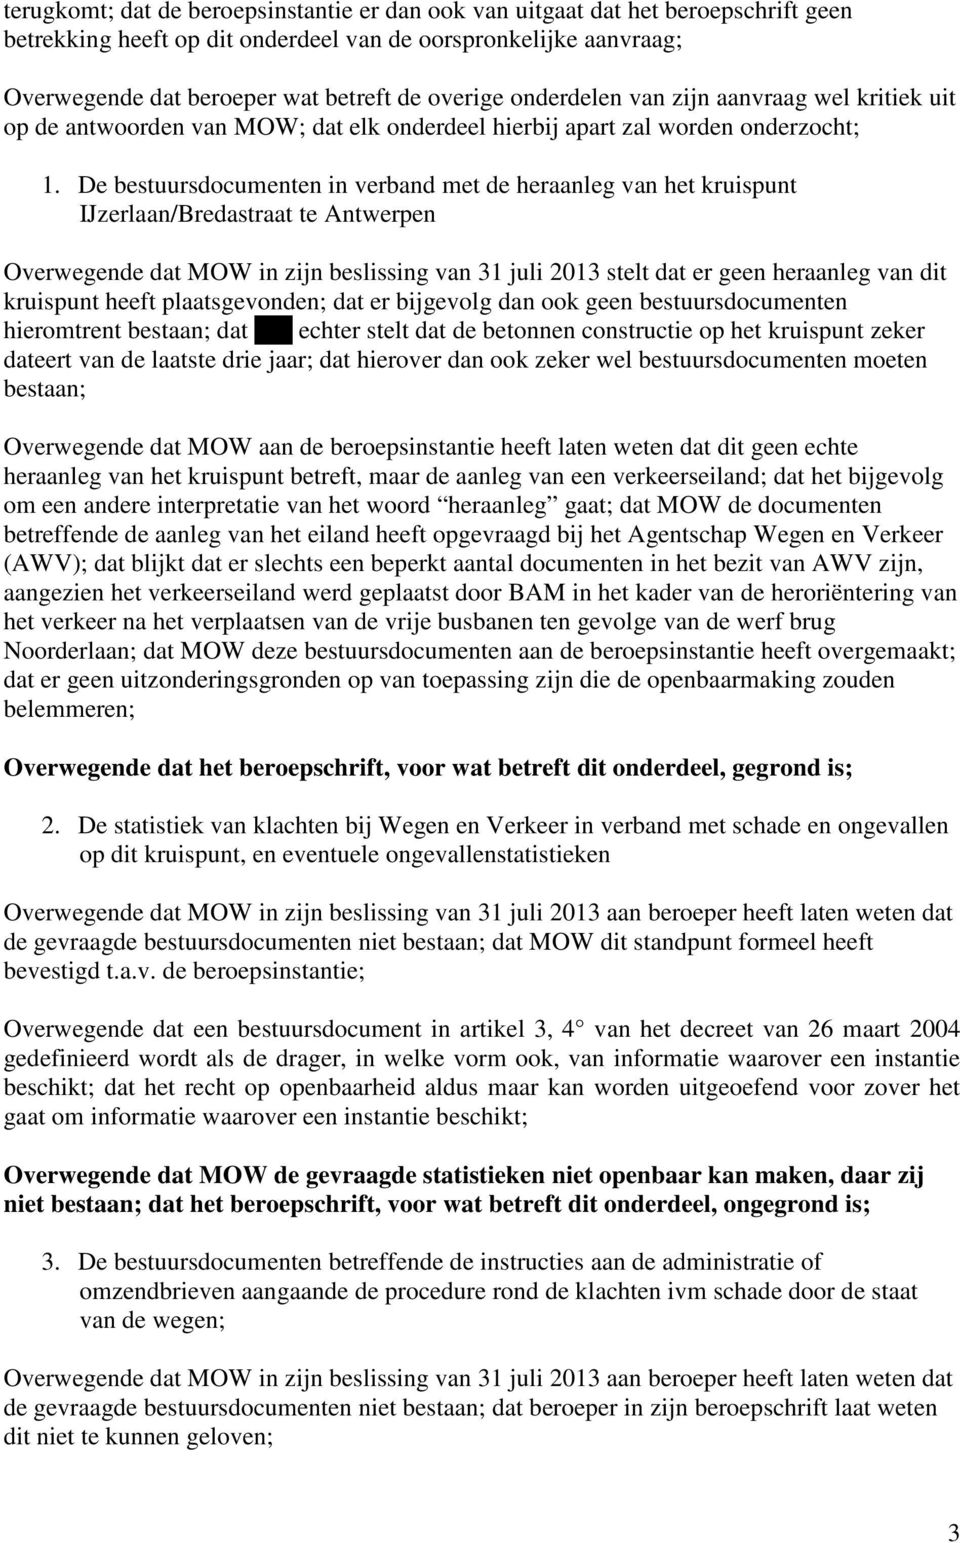 De bestuursdocumenten in verband met de heraanleg van het kruispunt IJzerlaan/Bredastraat te Antwerpen Overwegende dat MOW in zijn beslissing van 31 juli 2013 stelt dat er geen heraanleg van dit